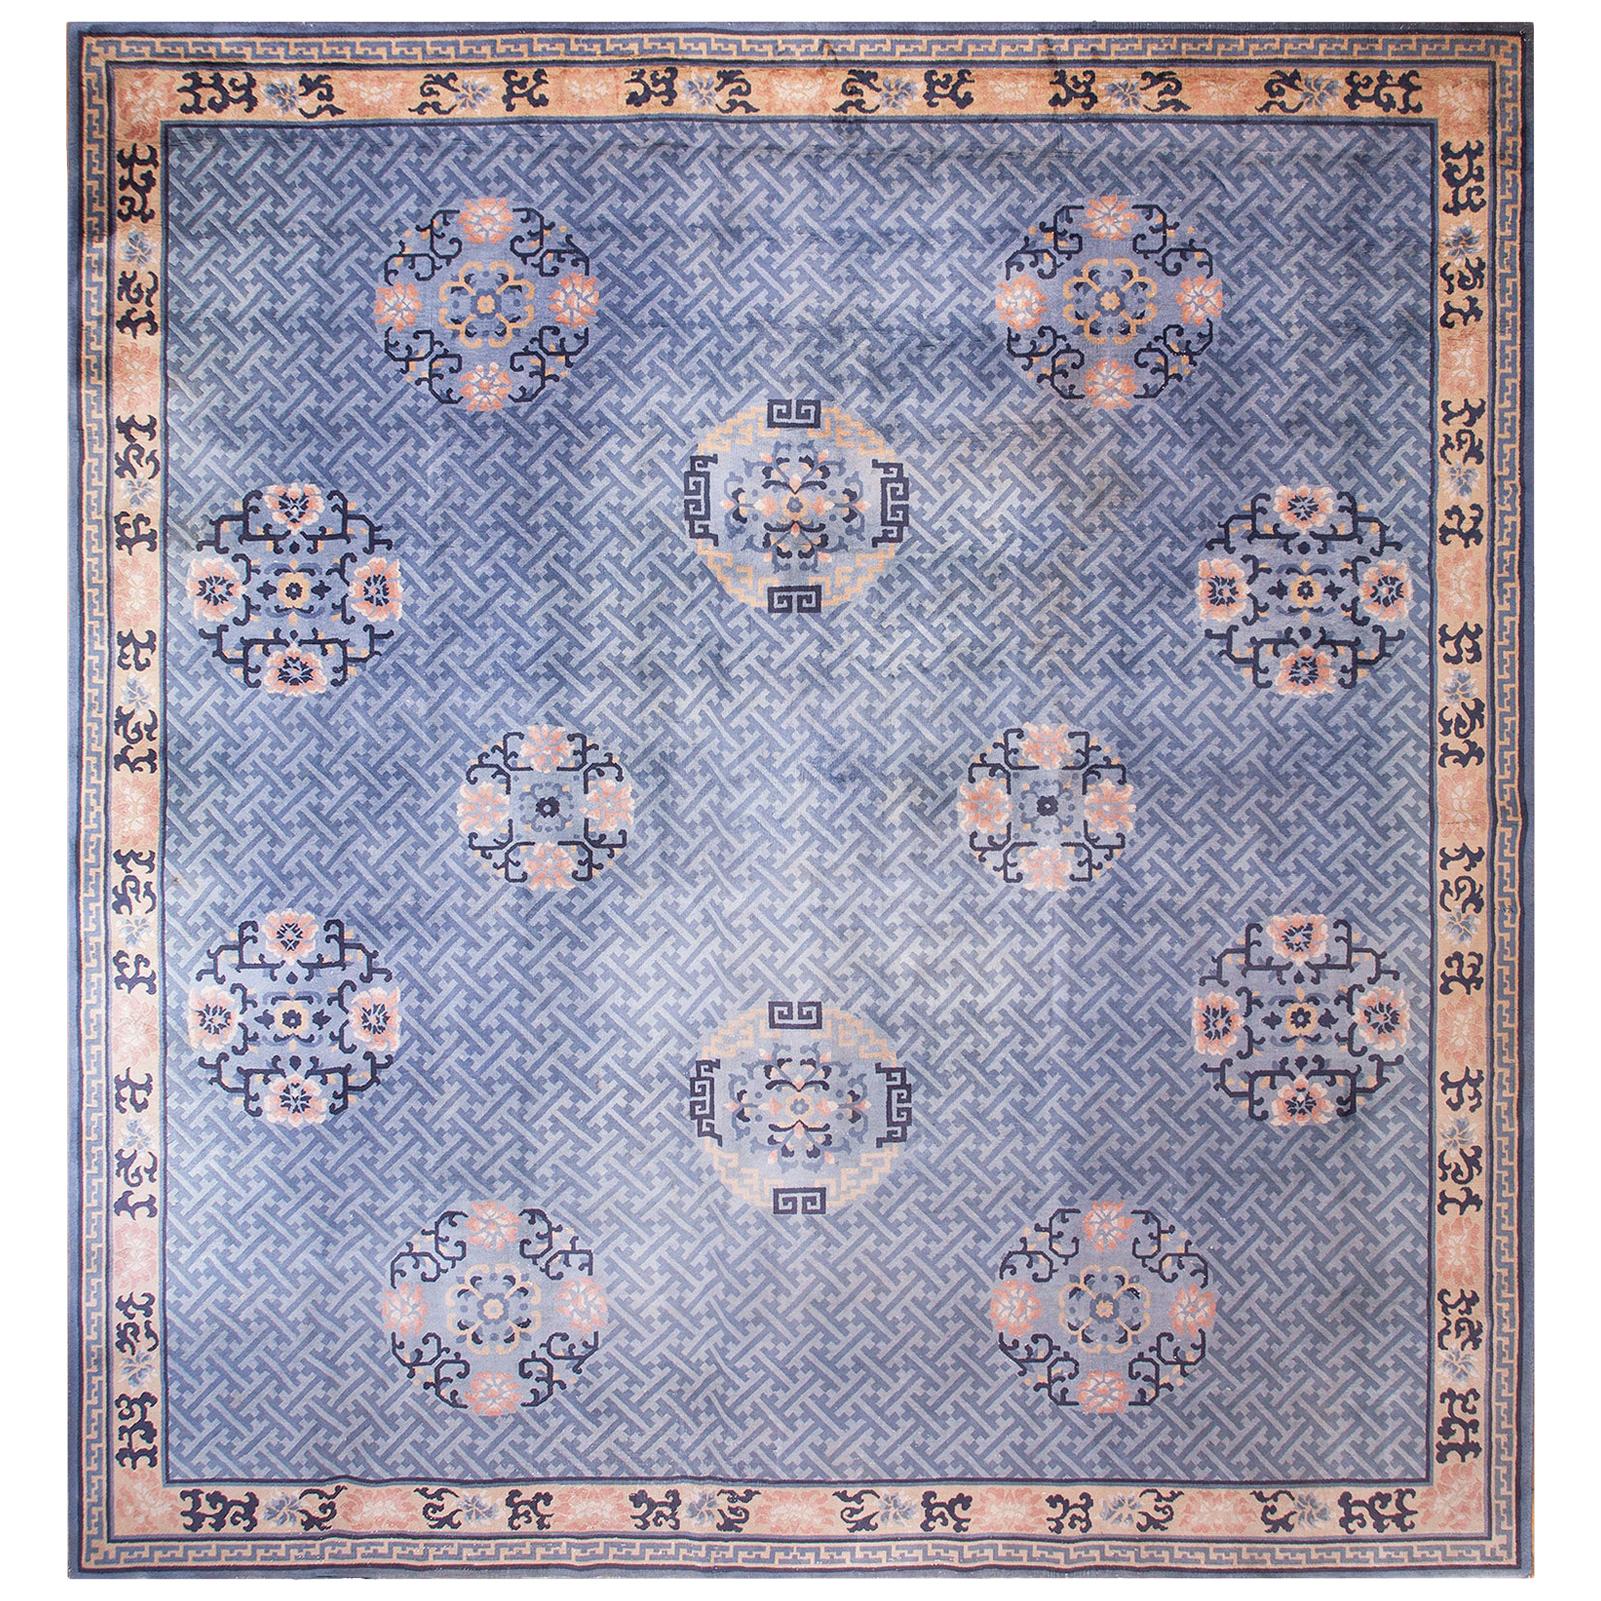 Chinesischer Art-Dco-Teppich aus den 1920er Jahren ( 13''6 x 14''3 - 412 x 435 cm)